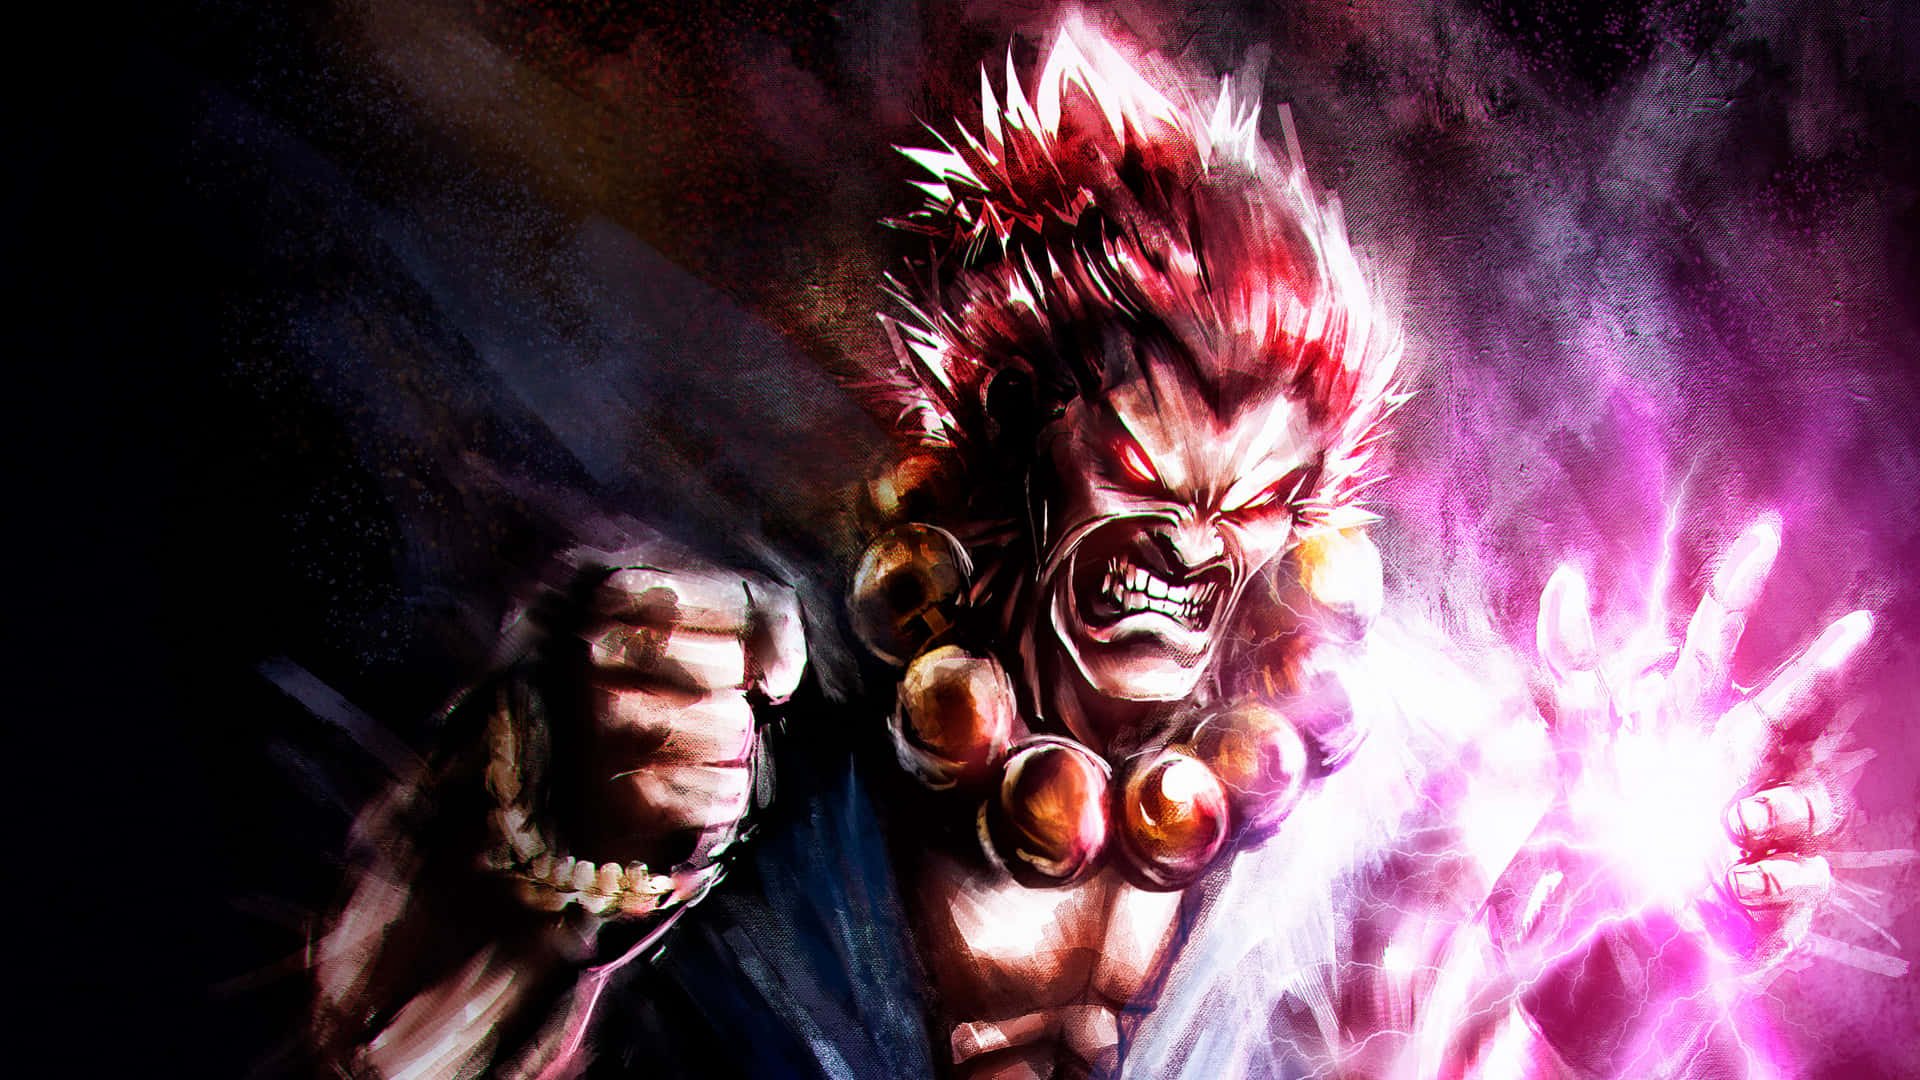 Fierce Anime Fighter Unleashing Power Wallpaper